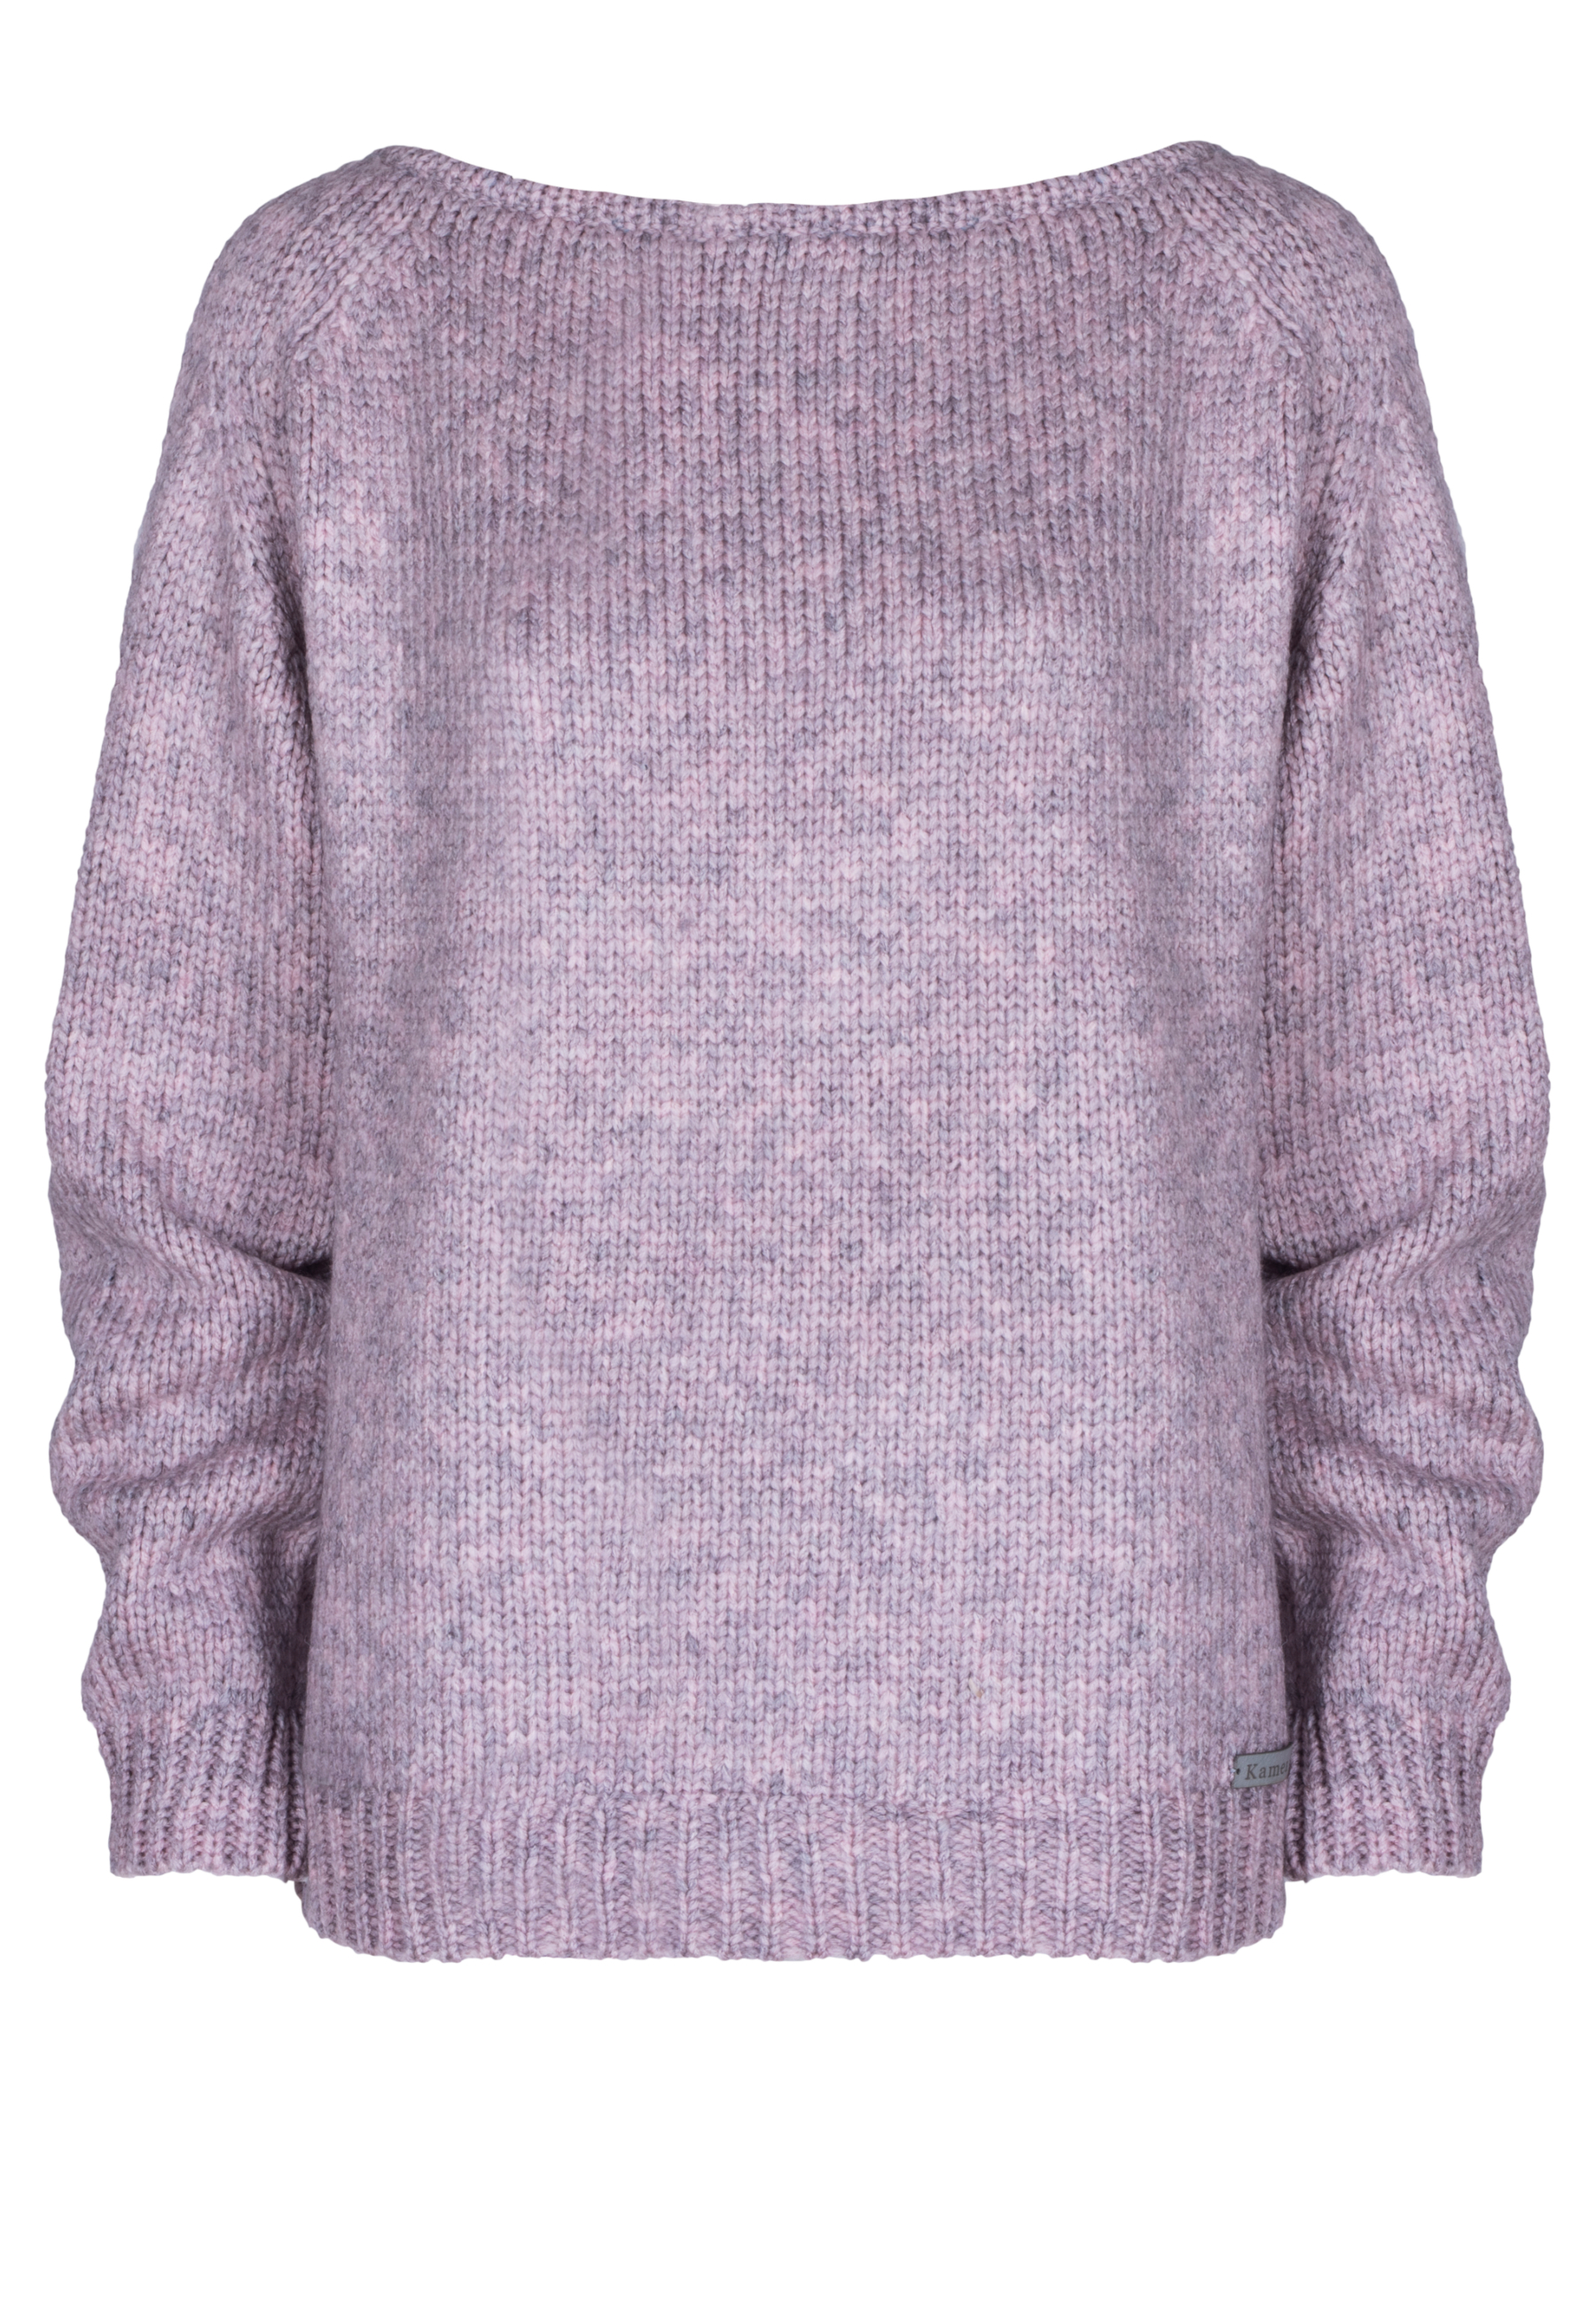 Levně Kamea Woman's Sweater K.21.601.09